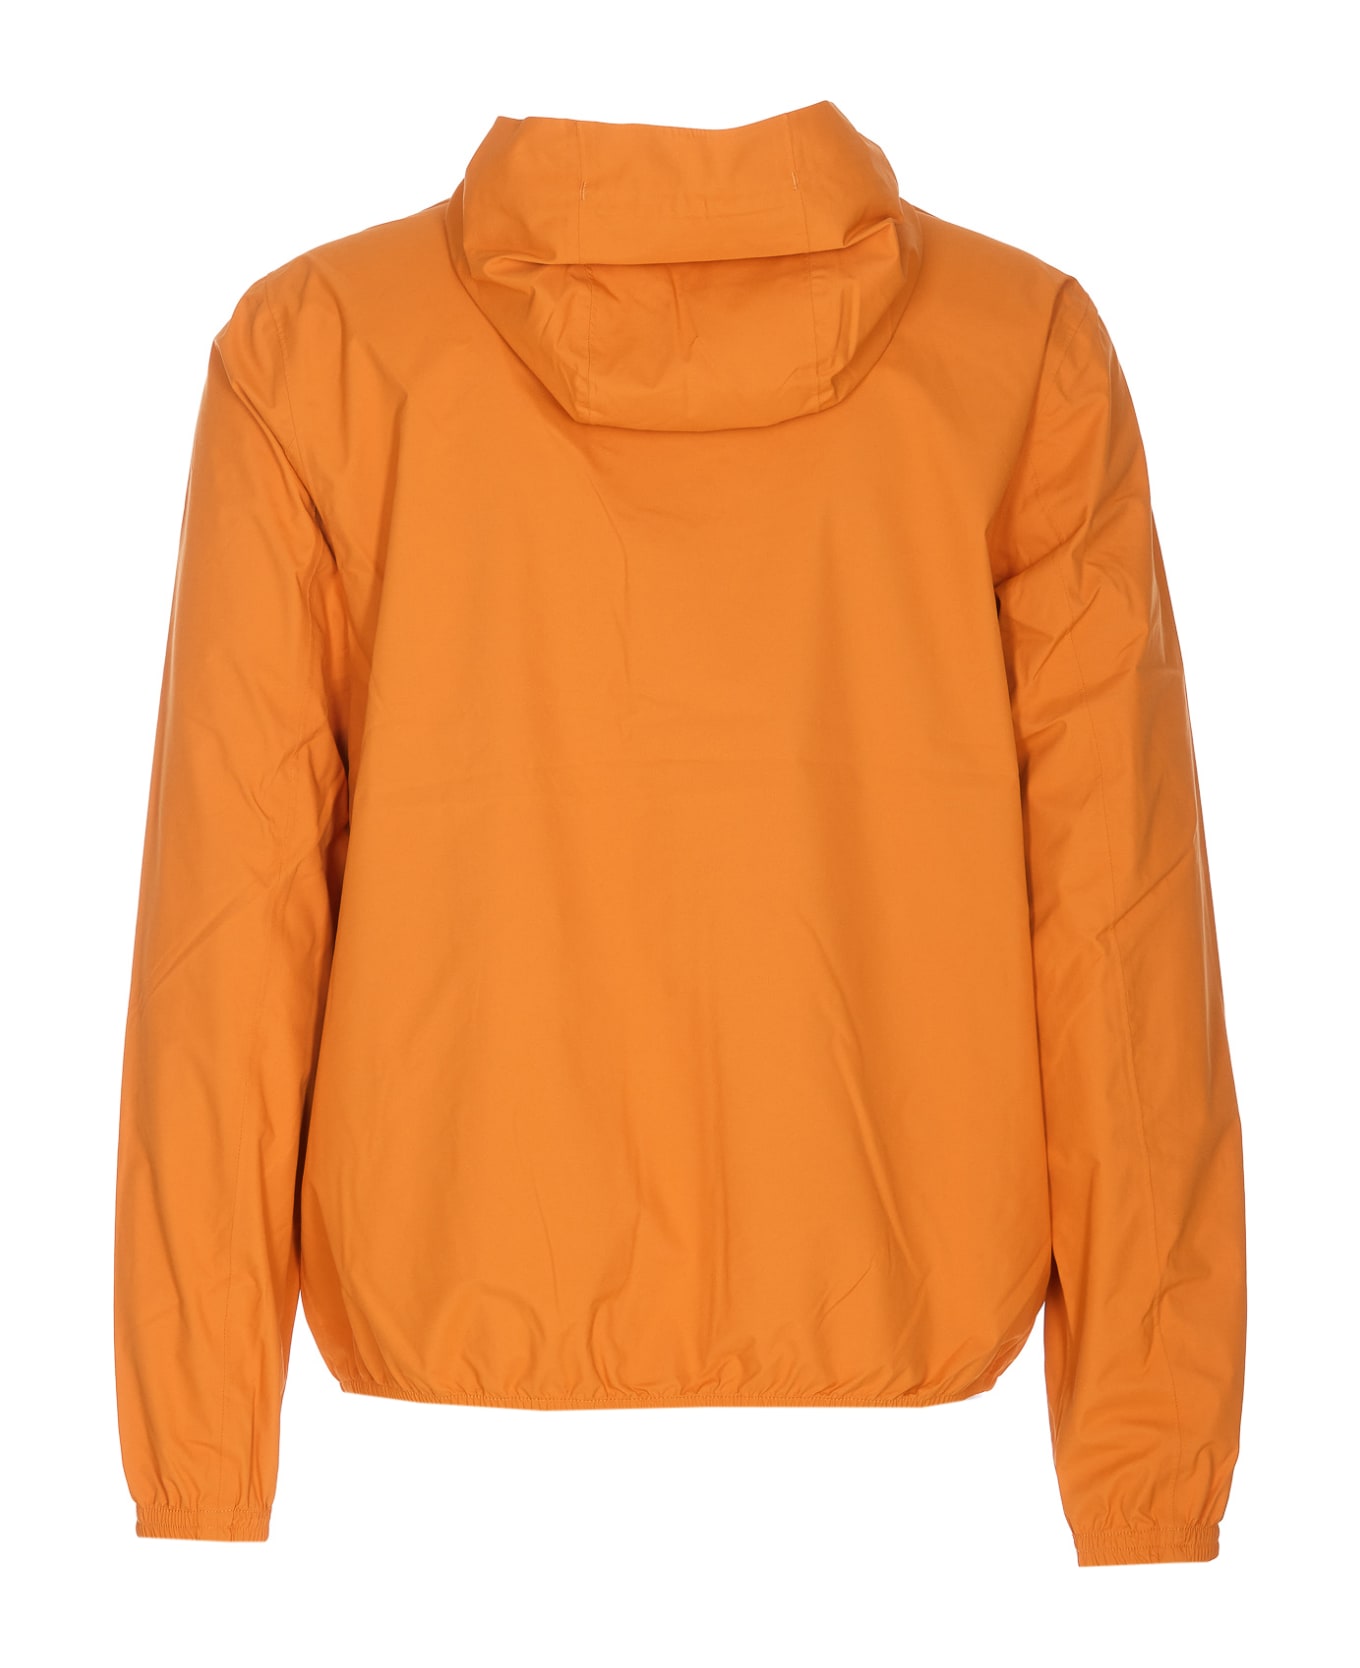 K-Way Stretch Jacket - Orange Md